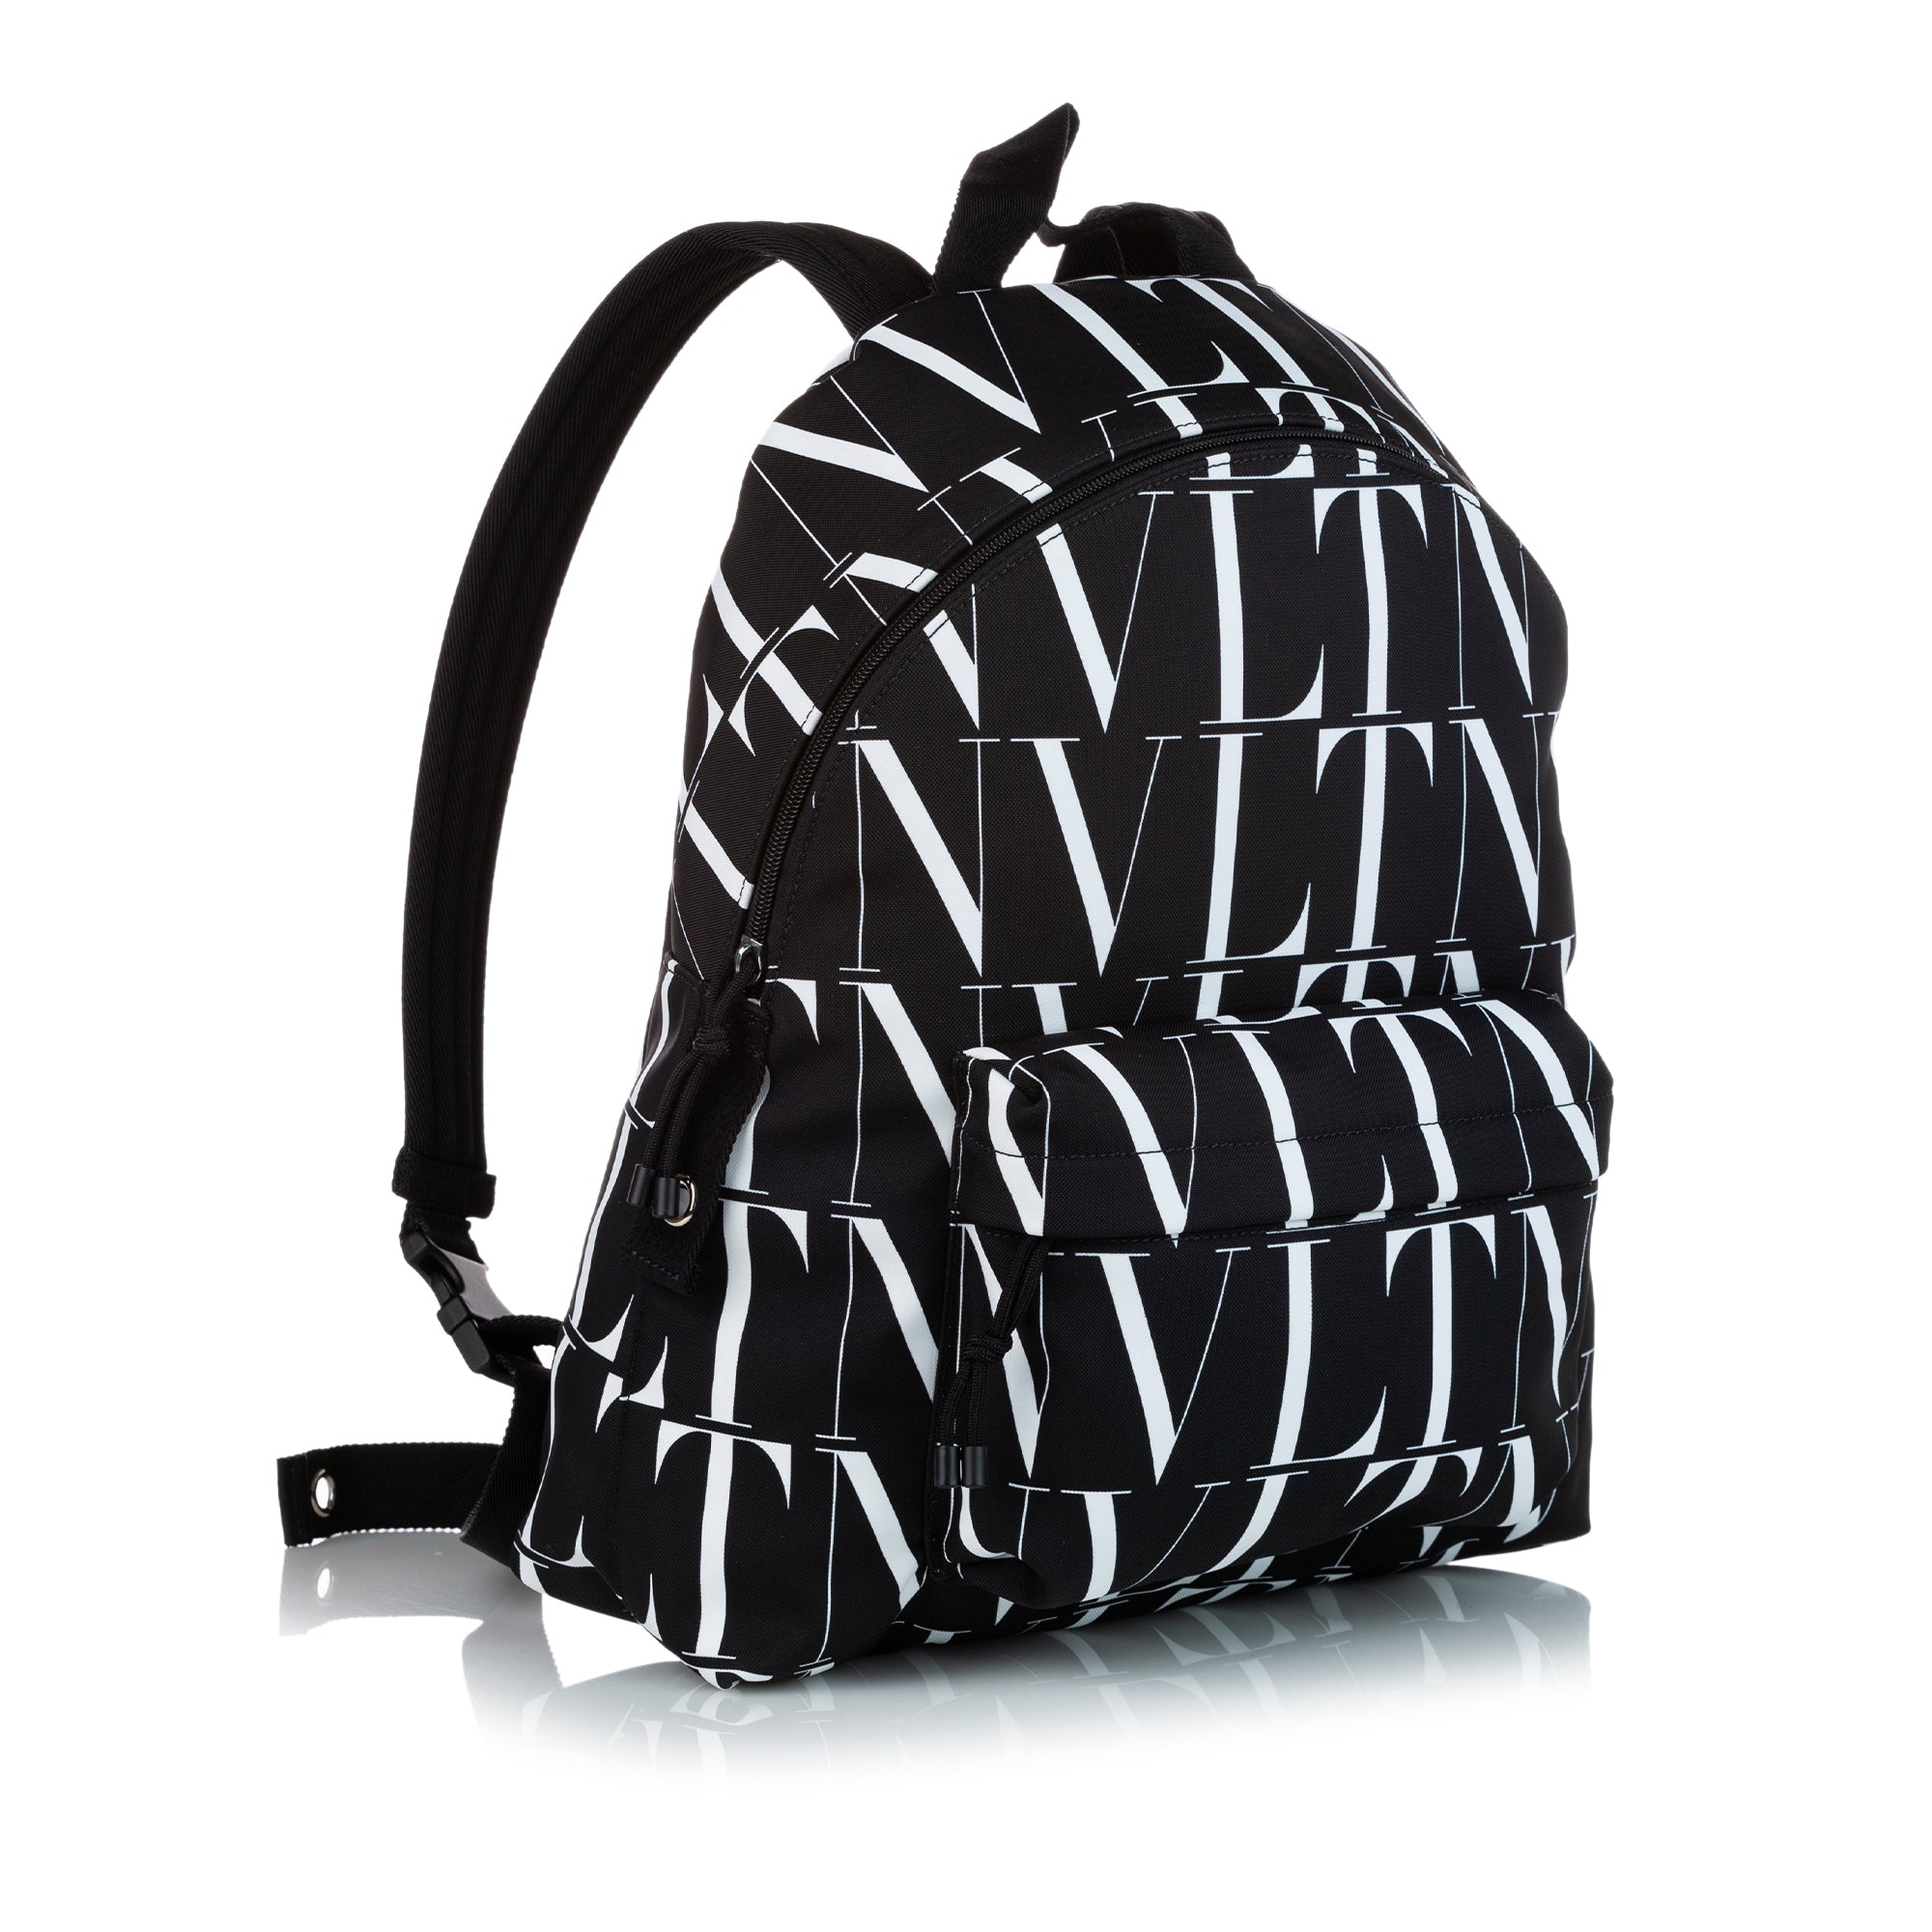 Black Valentino VLTN Times Nylon Backpack